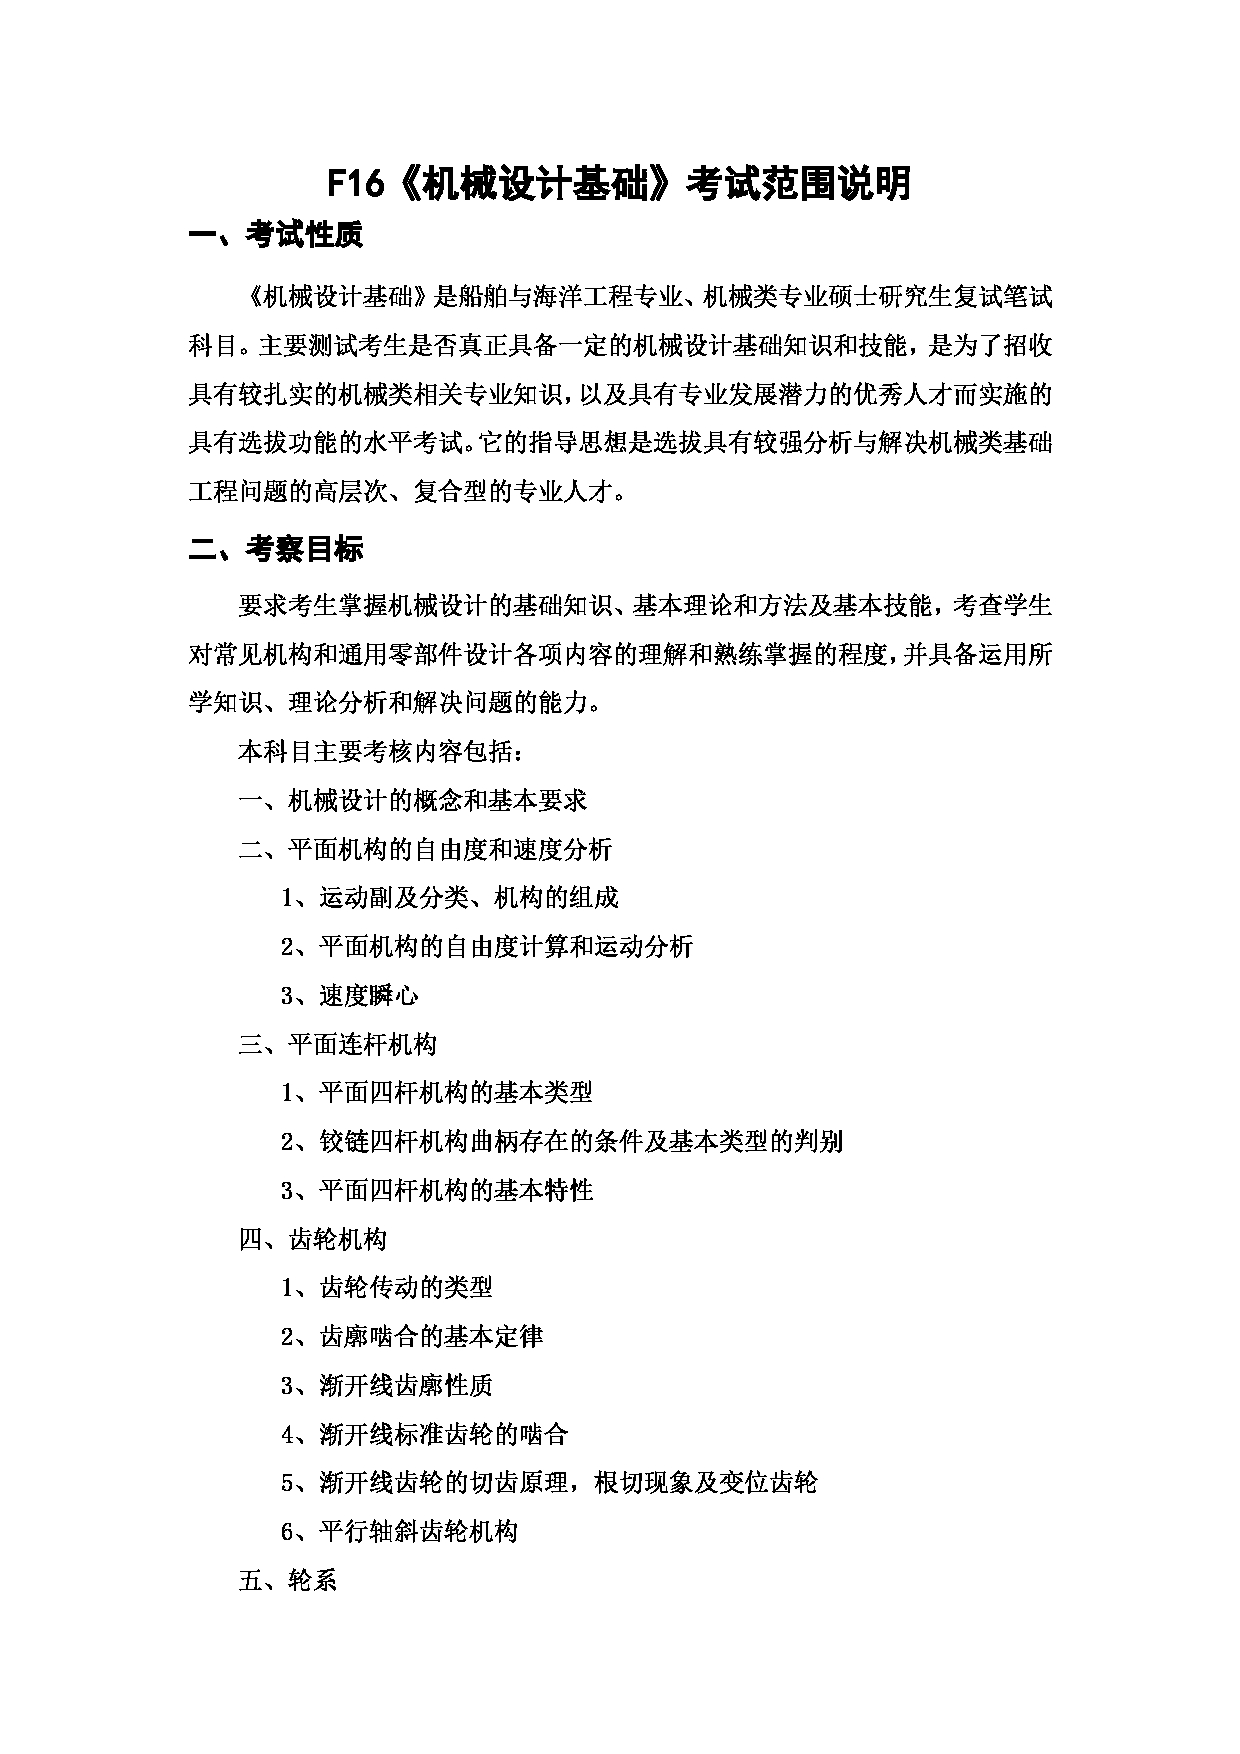 上海海洋大学2023年考研自命题科目 F16《机械设计基础》考试范围第1页